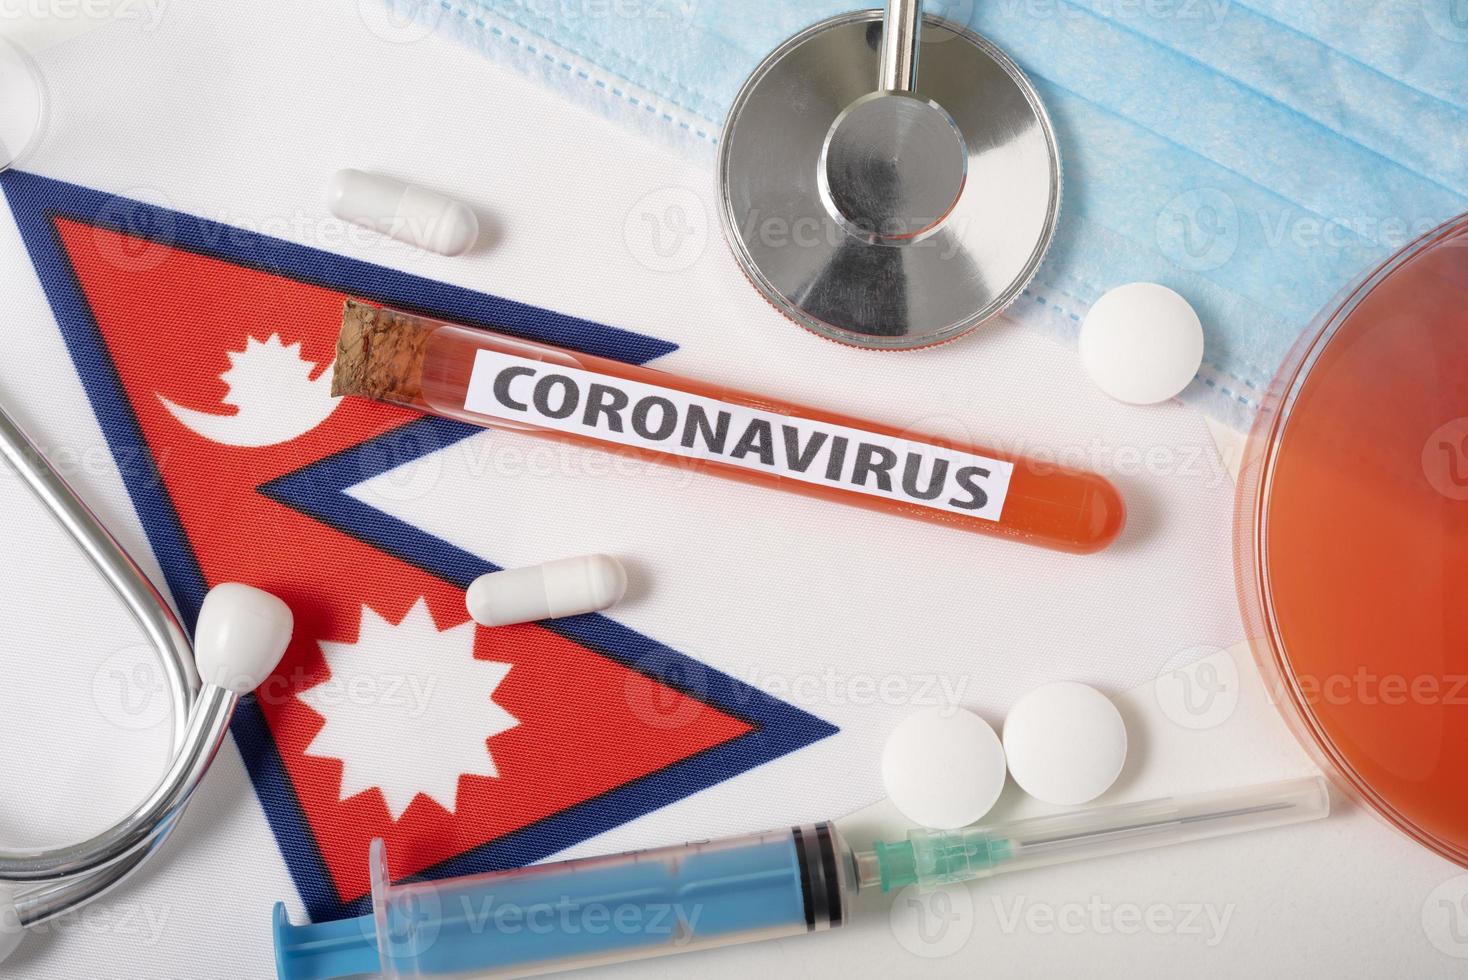 coronavirus, notion de ncov. vue de dessus masque respiratoire protecteur, stéthoscope, seringue, comprimés sur le drapeau du népal. photo